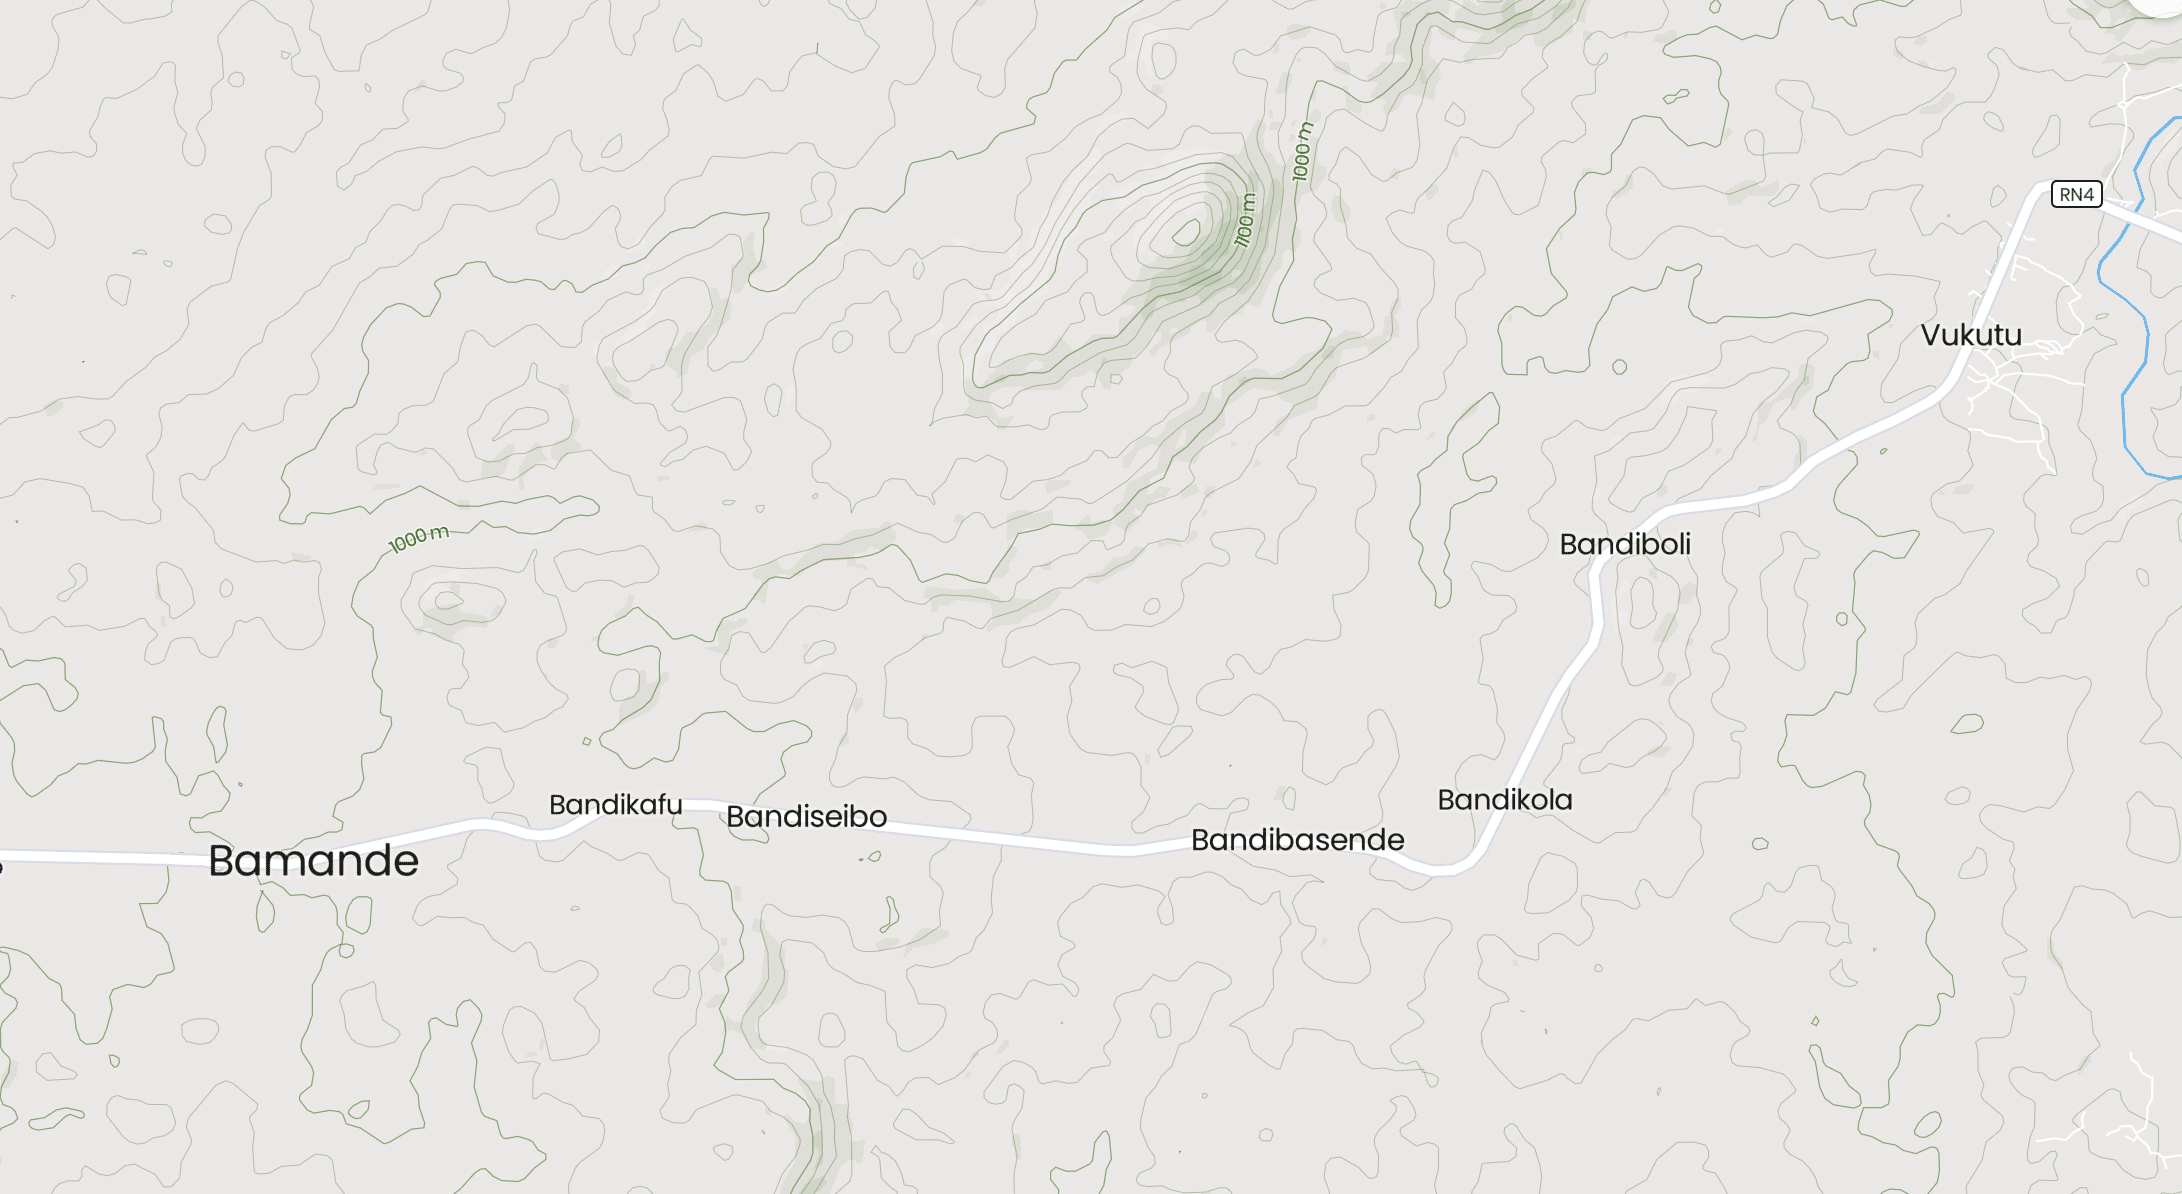 villages of Bamande, Balimali and Bandikafu on the road linking Komanda-Mambasa